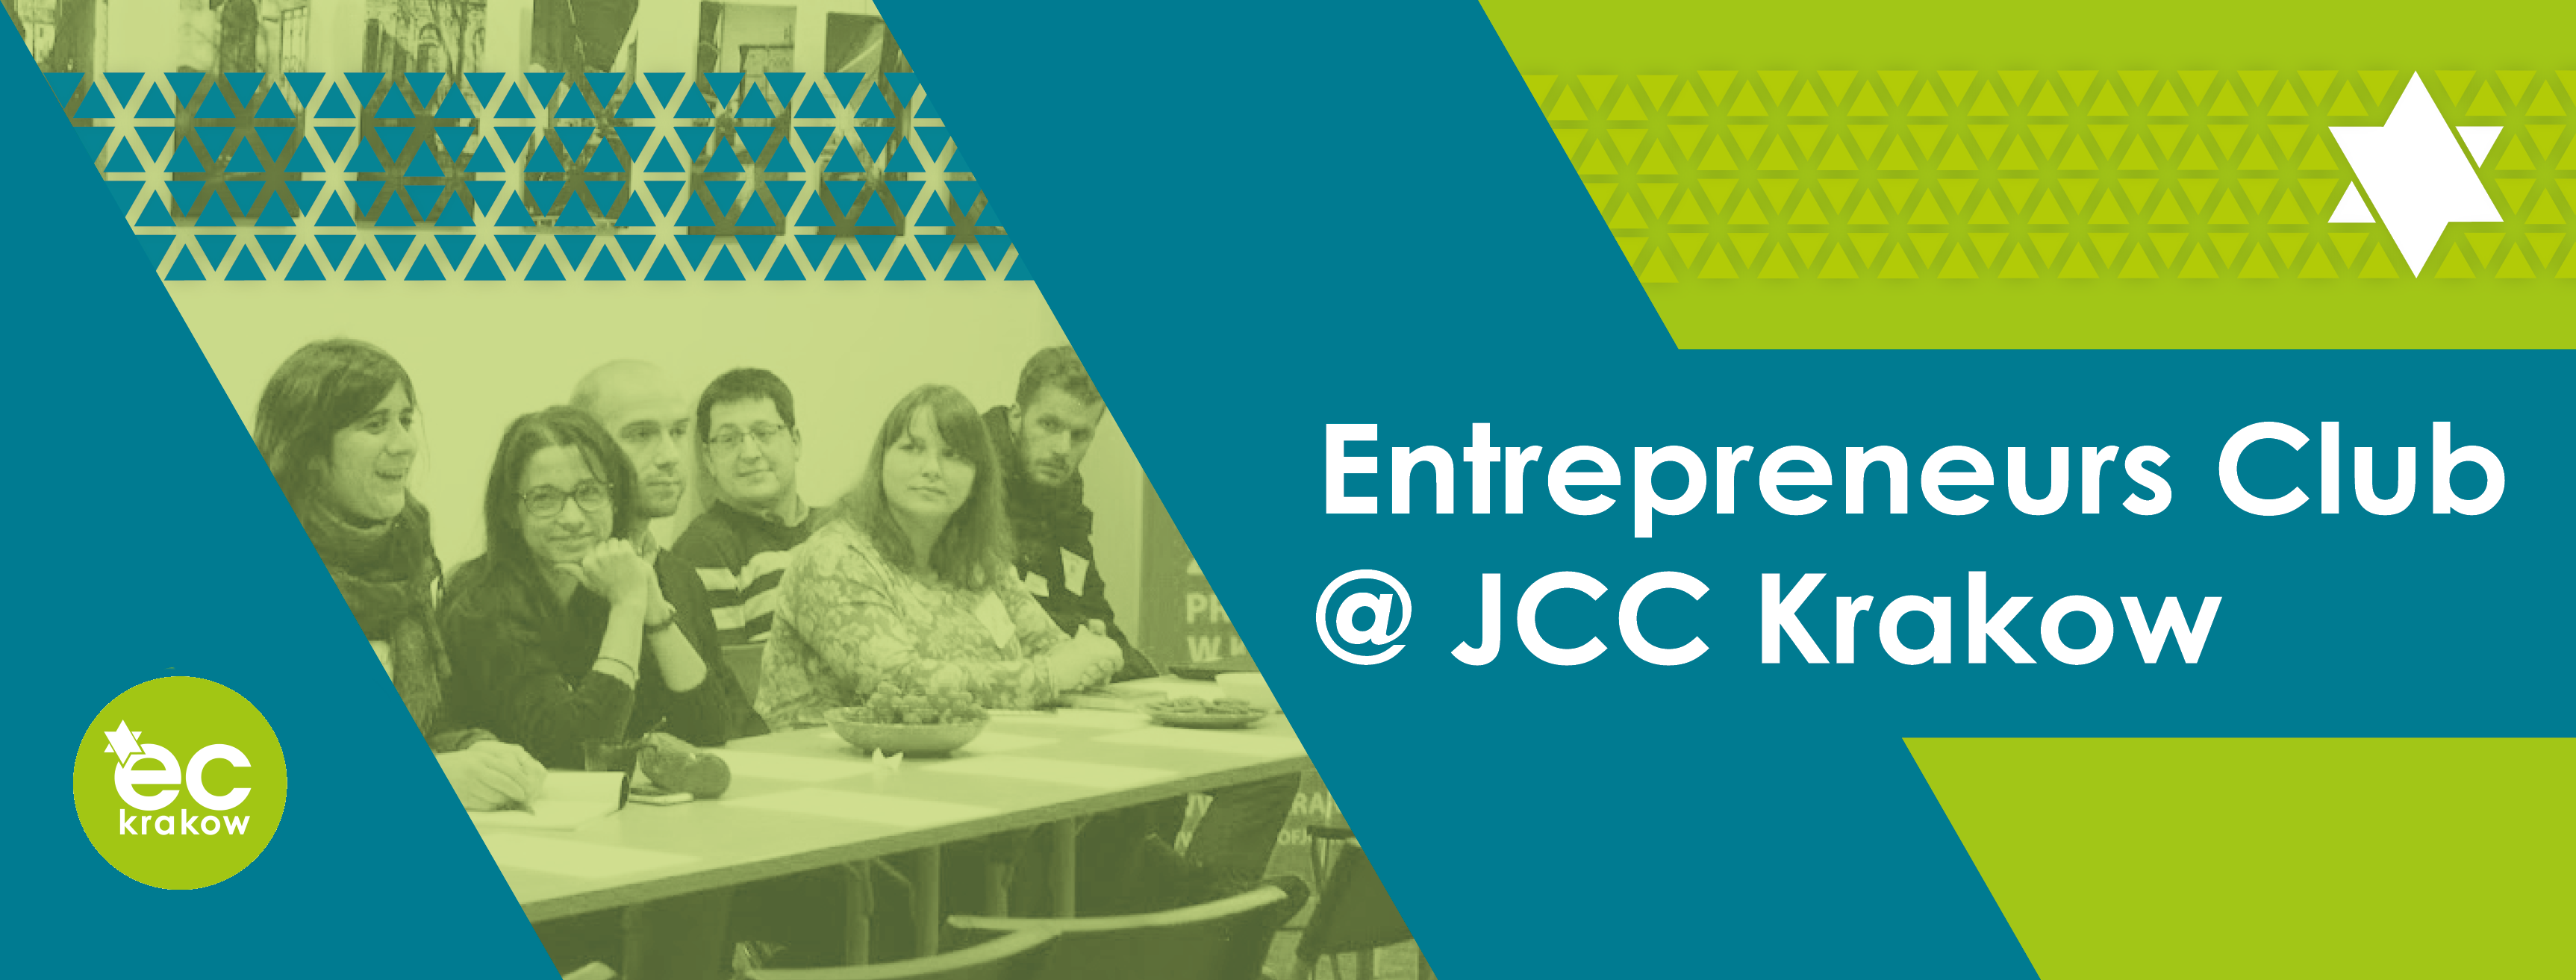 entrepreneurs-club-jcc-krakow-2